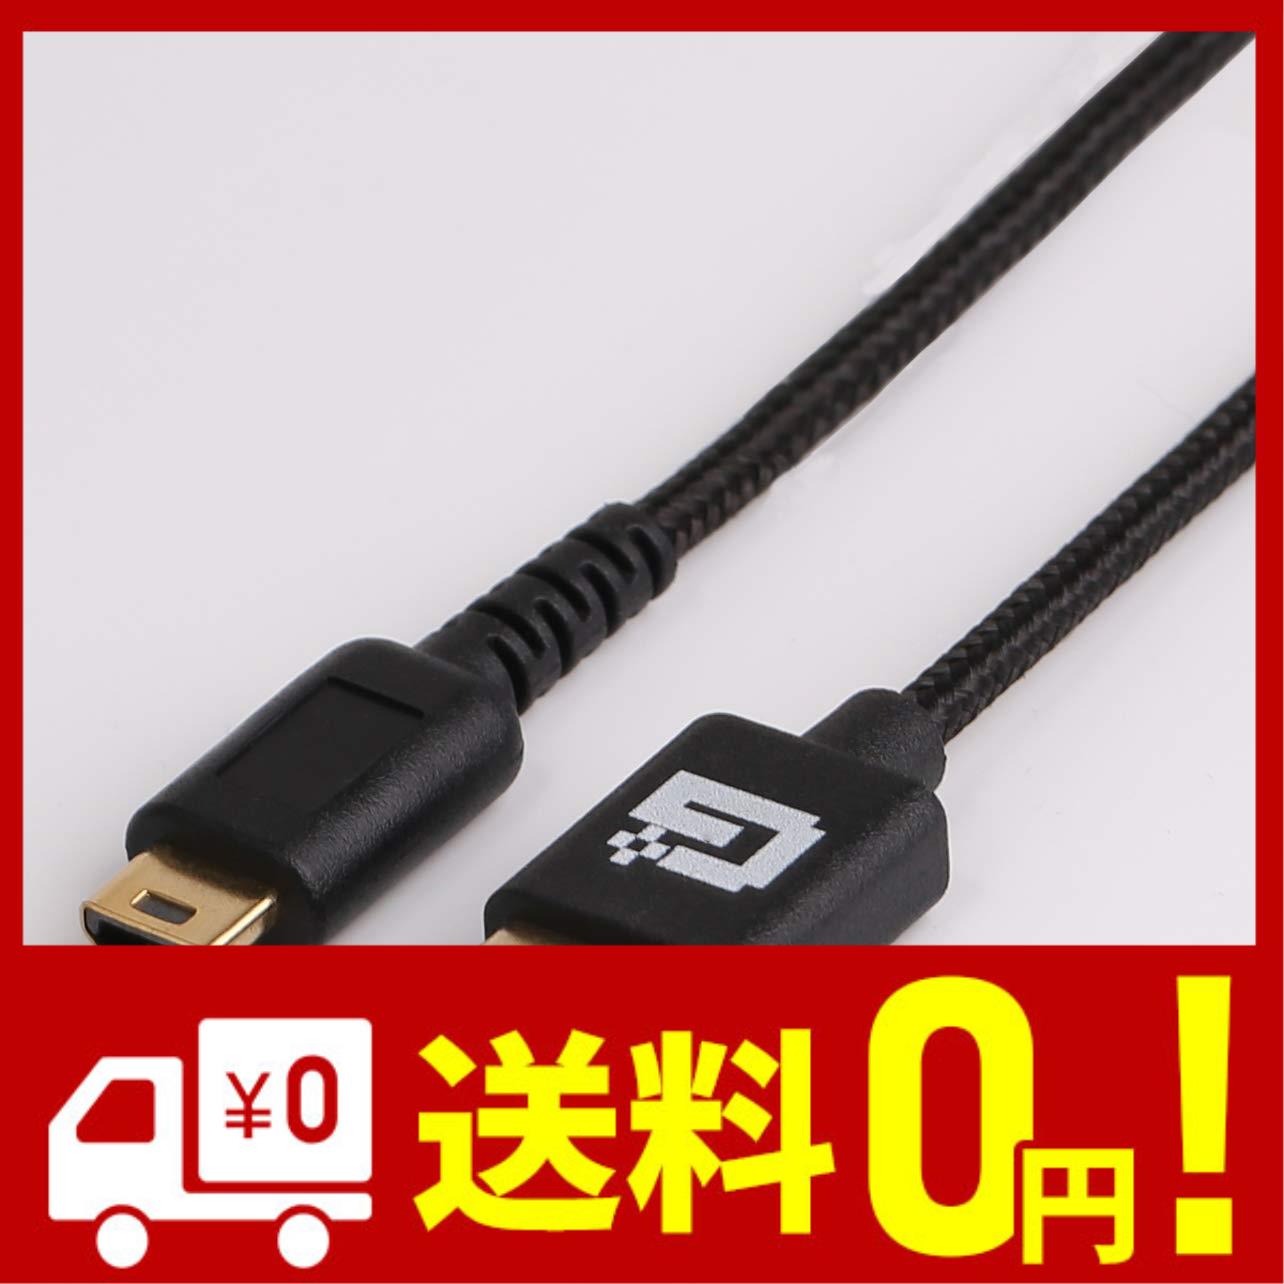 3メートル DNTselect DS Lite 充電器 USB ケーブル DSライト DSL DSLite NDS 3m 高耐久 メッシュタイプ 黒